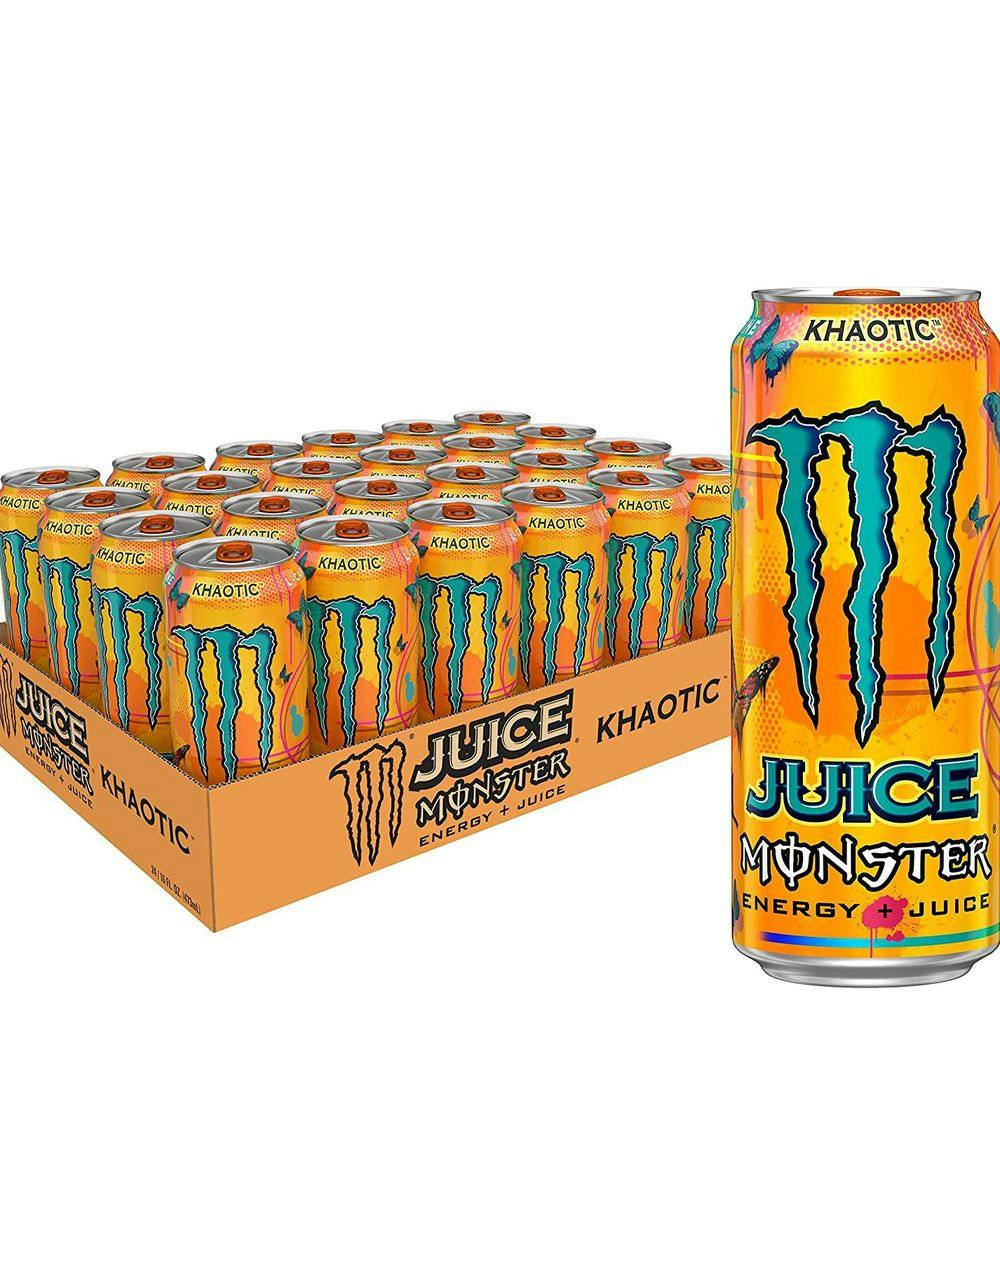 24 Monster Energy Khaotic 500 ml Energidrik - Helt Bakke - Se Vores Slik Slik og Chokolade - SLIK